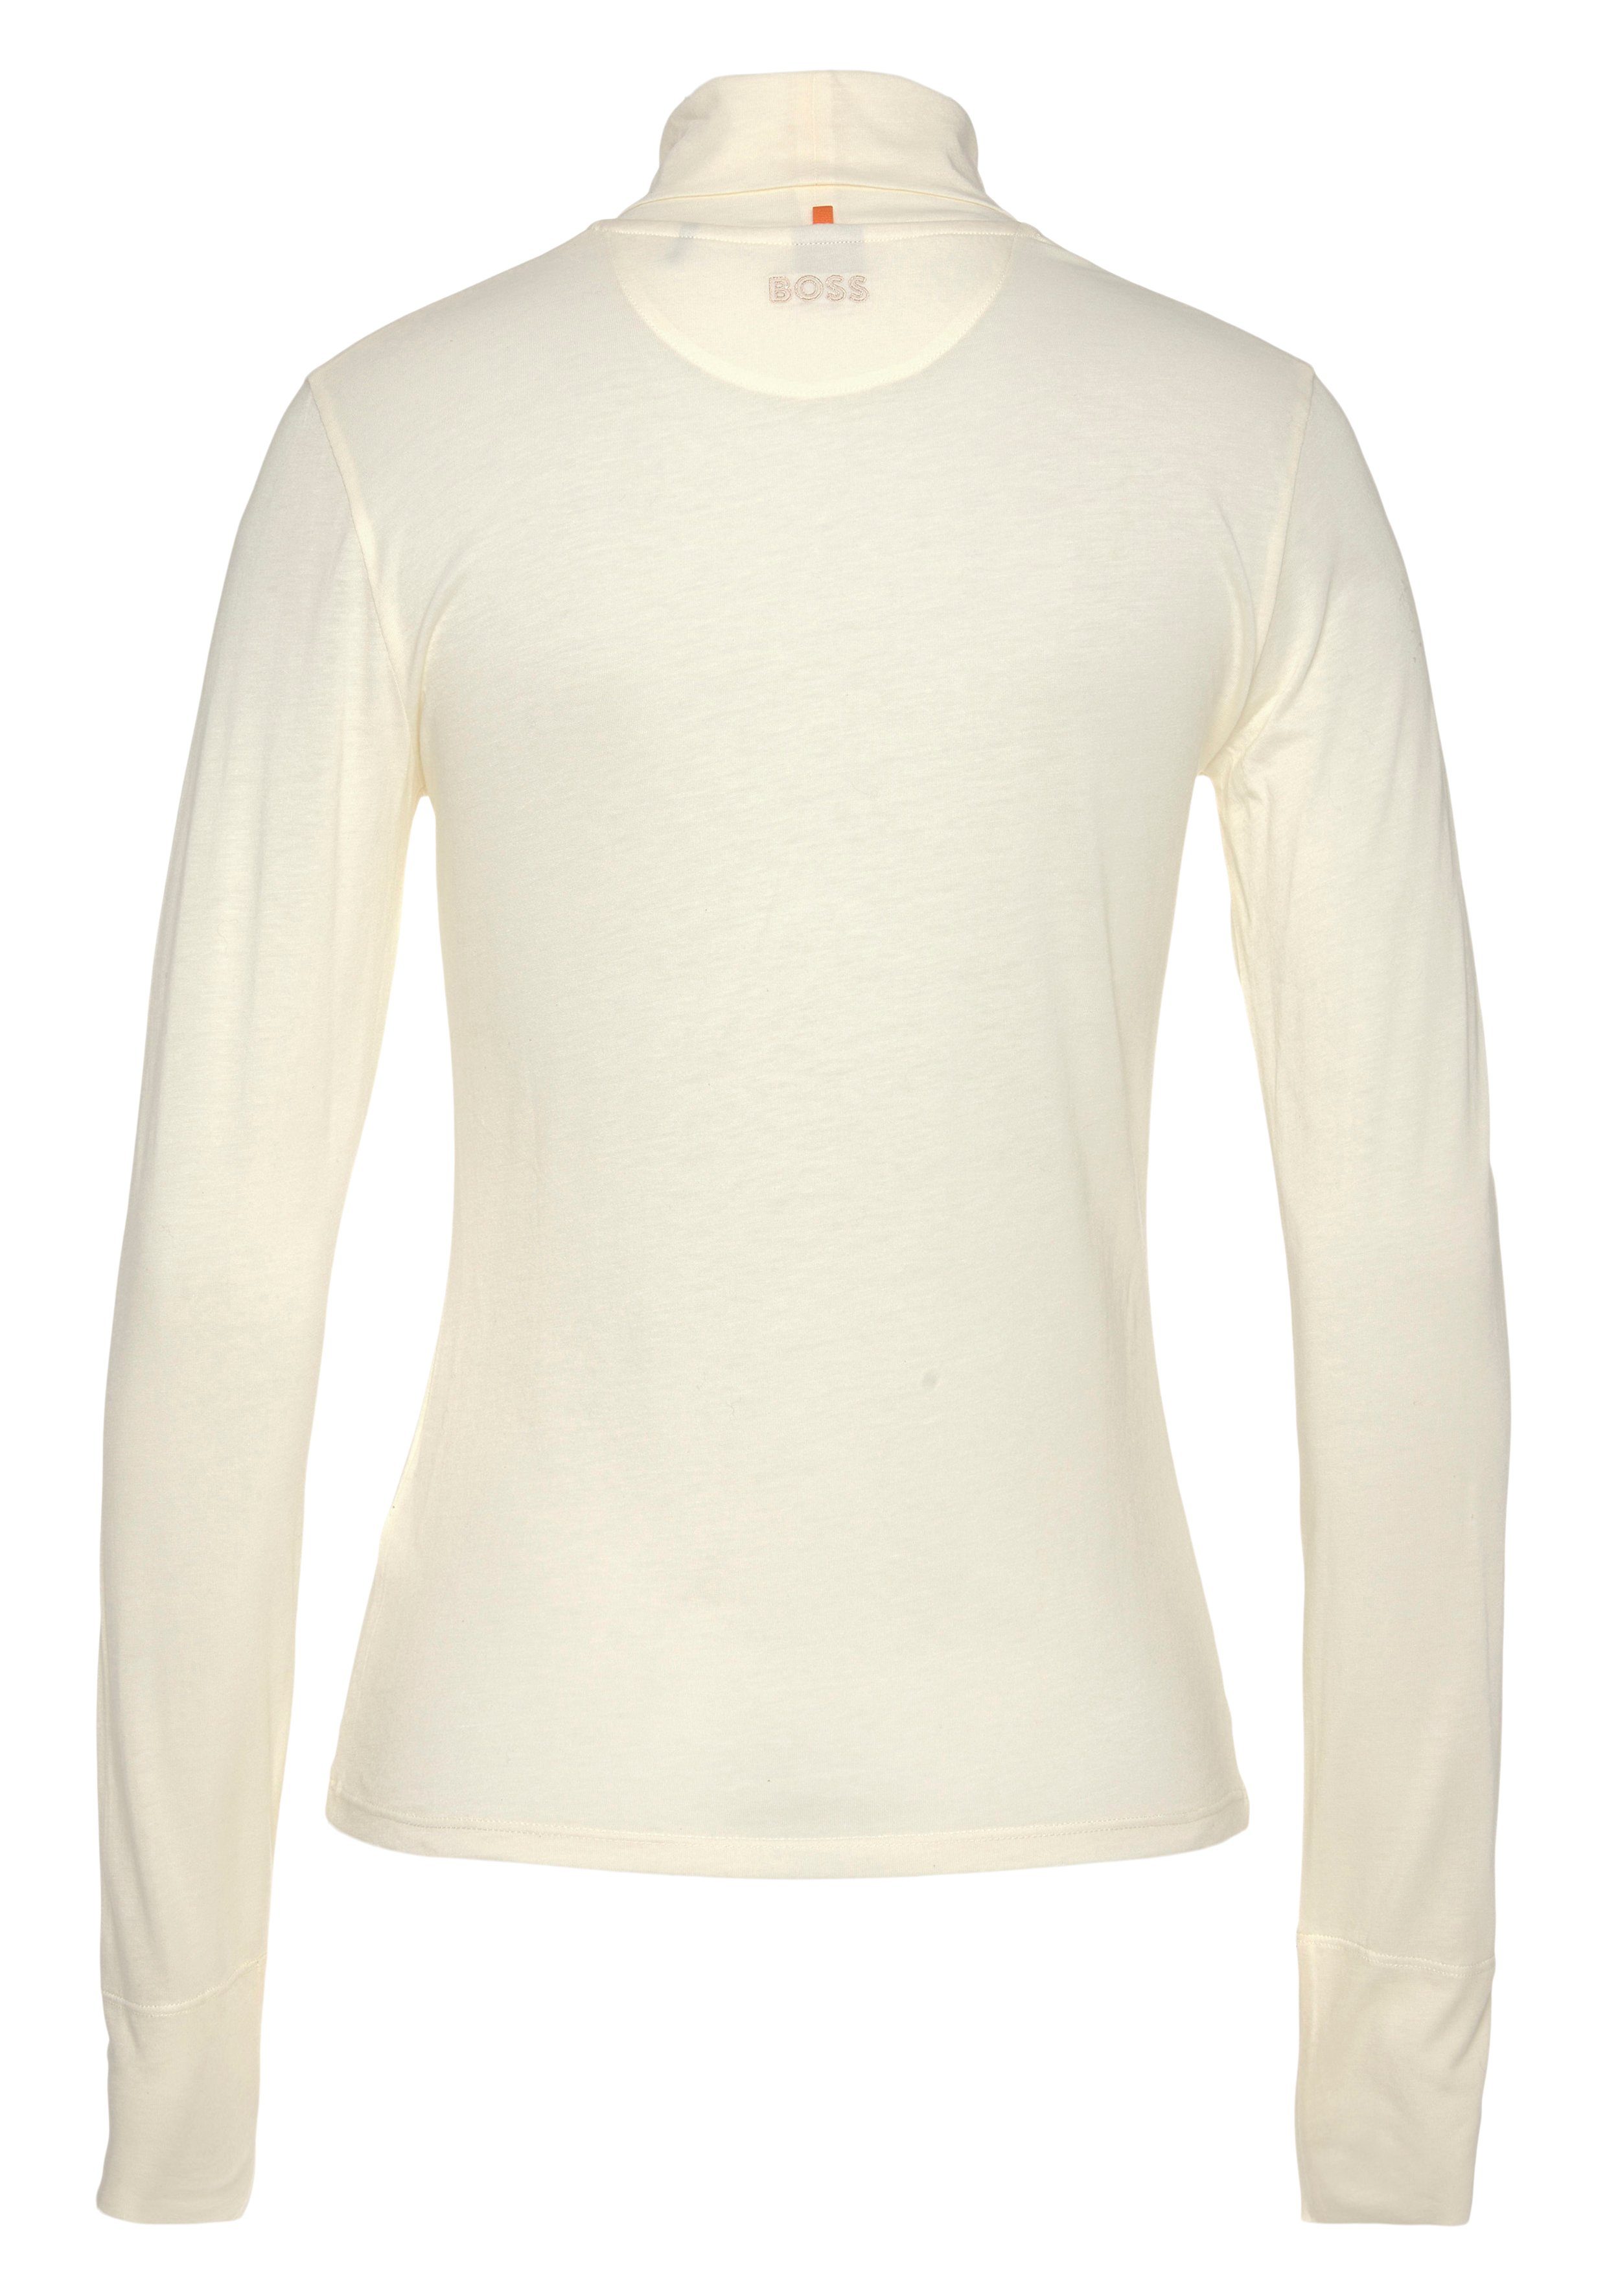 BOSS ORANGE Langarmshirt C_Emerie_2 Stehkragen, atmungsaktive Rolli hochwertige Premium Basic, White Qualität, Open